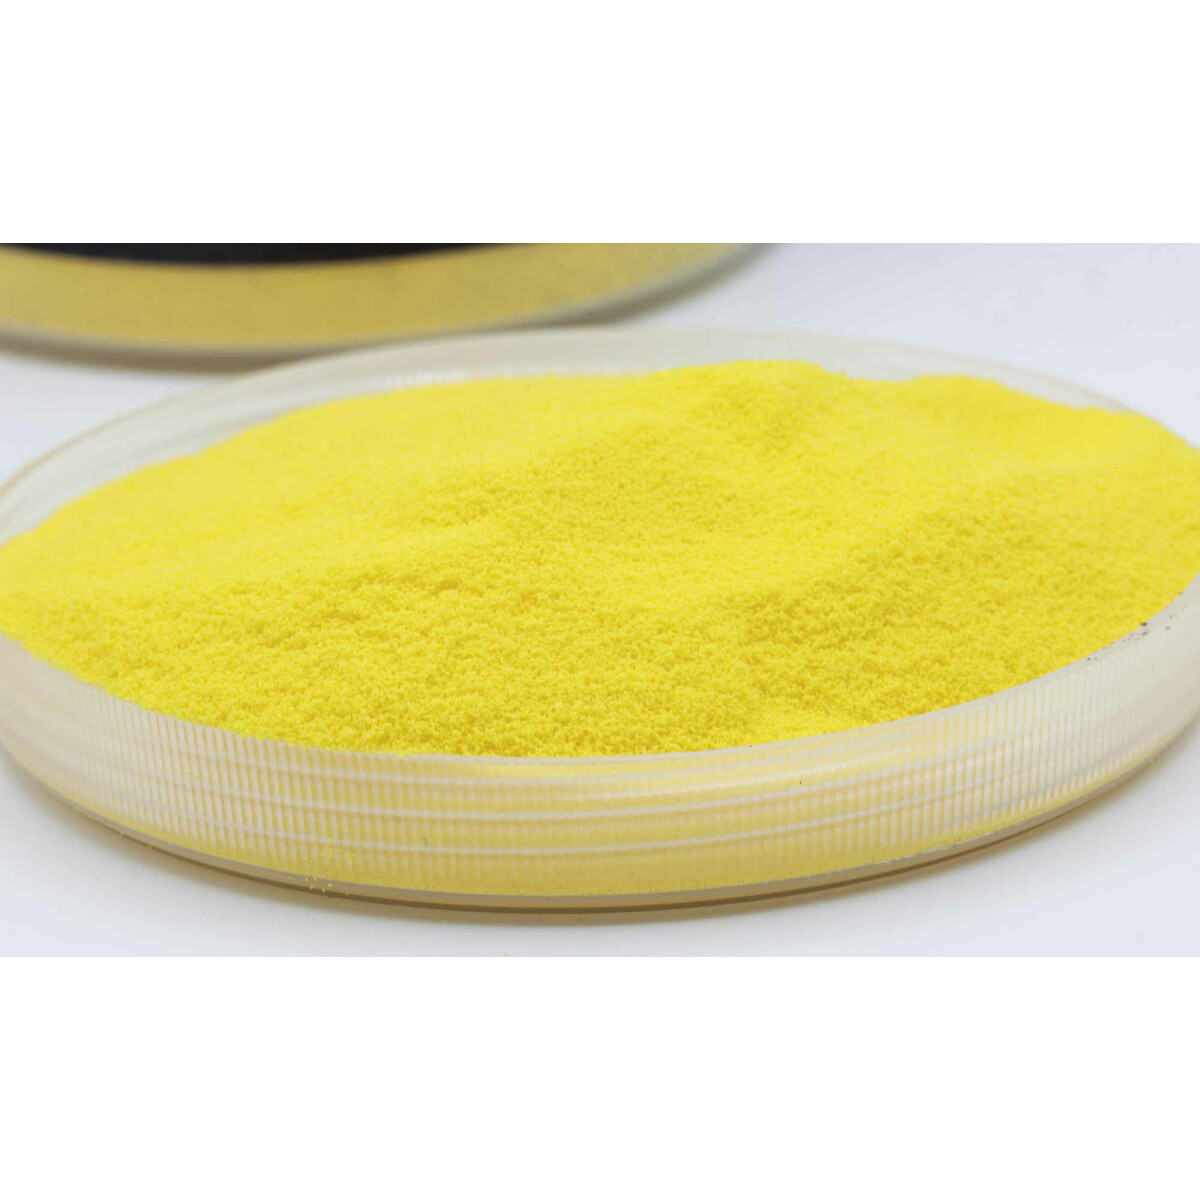 Carpleads Powder Coating - Gelb 500 g